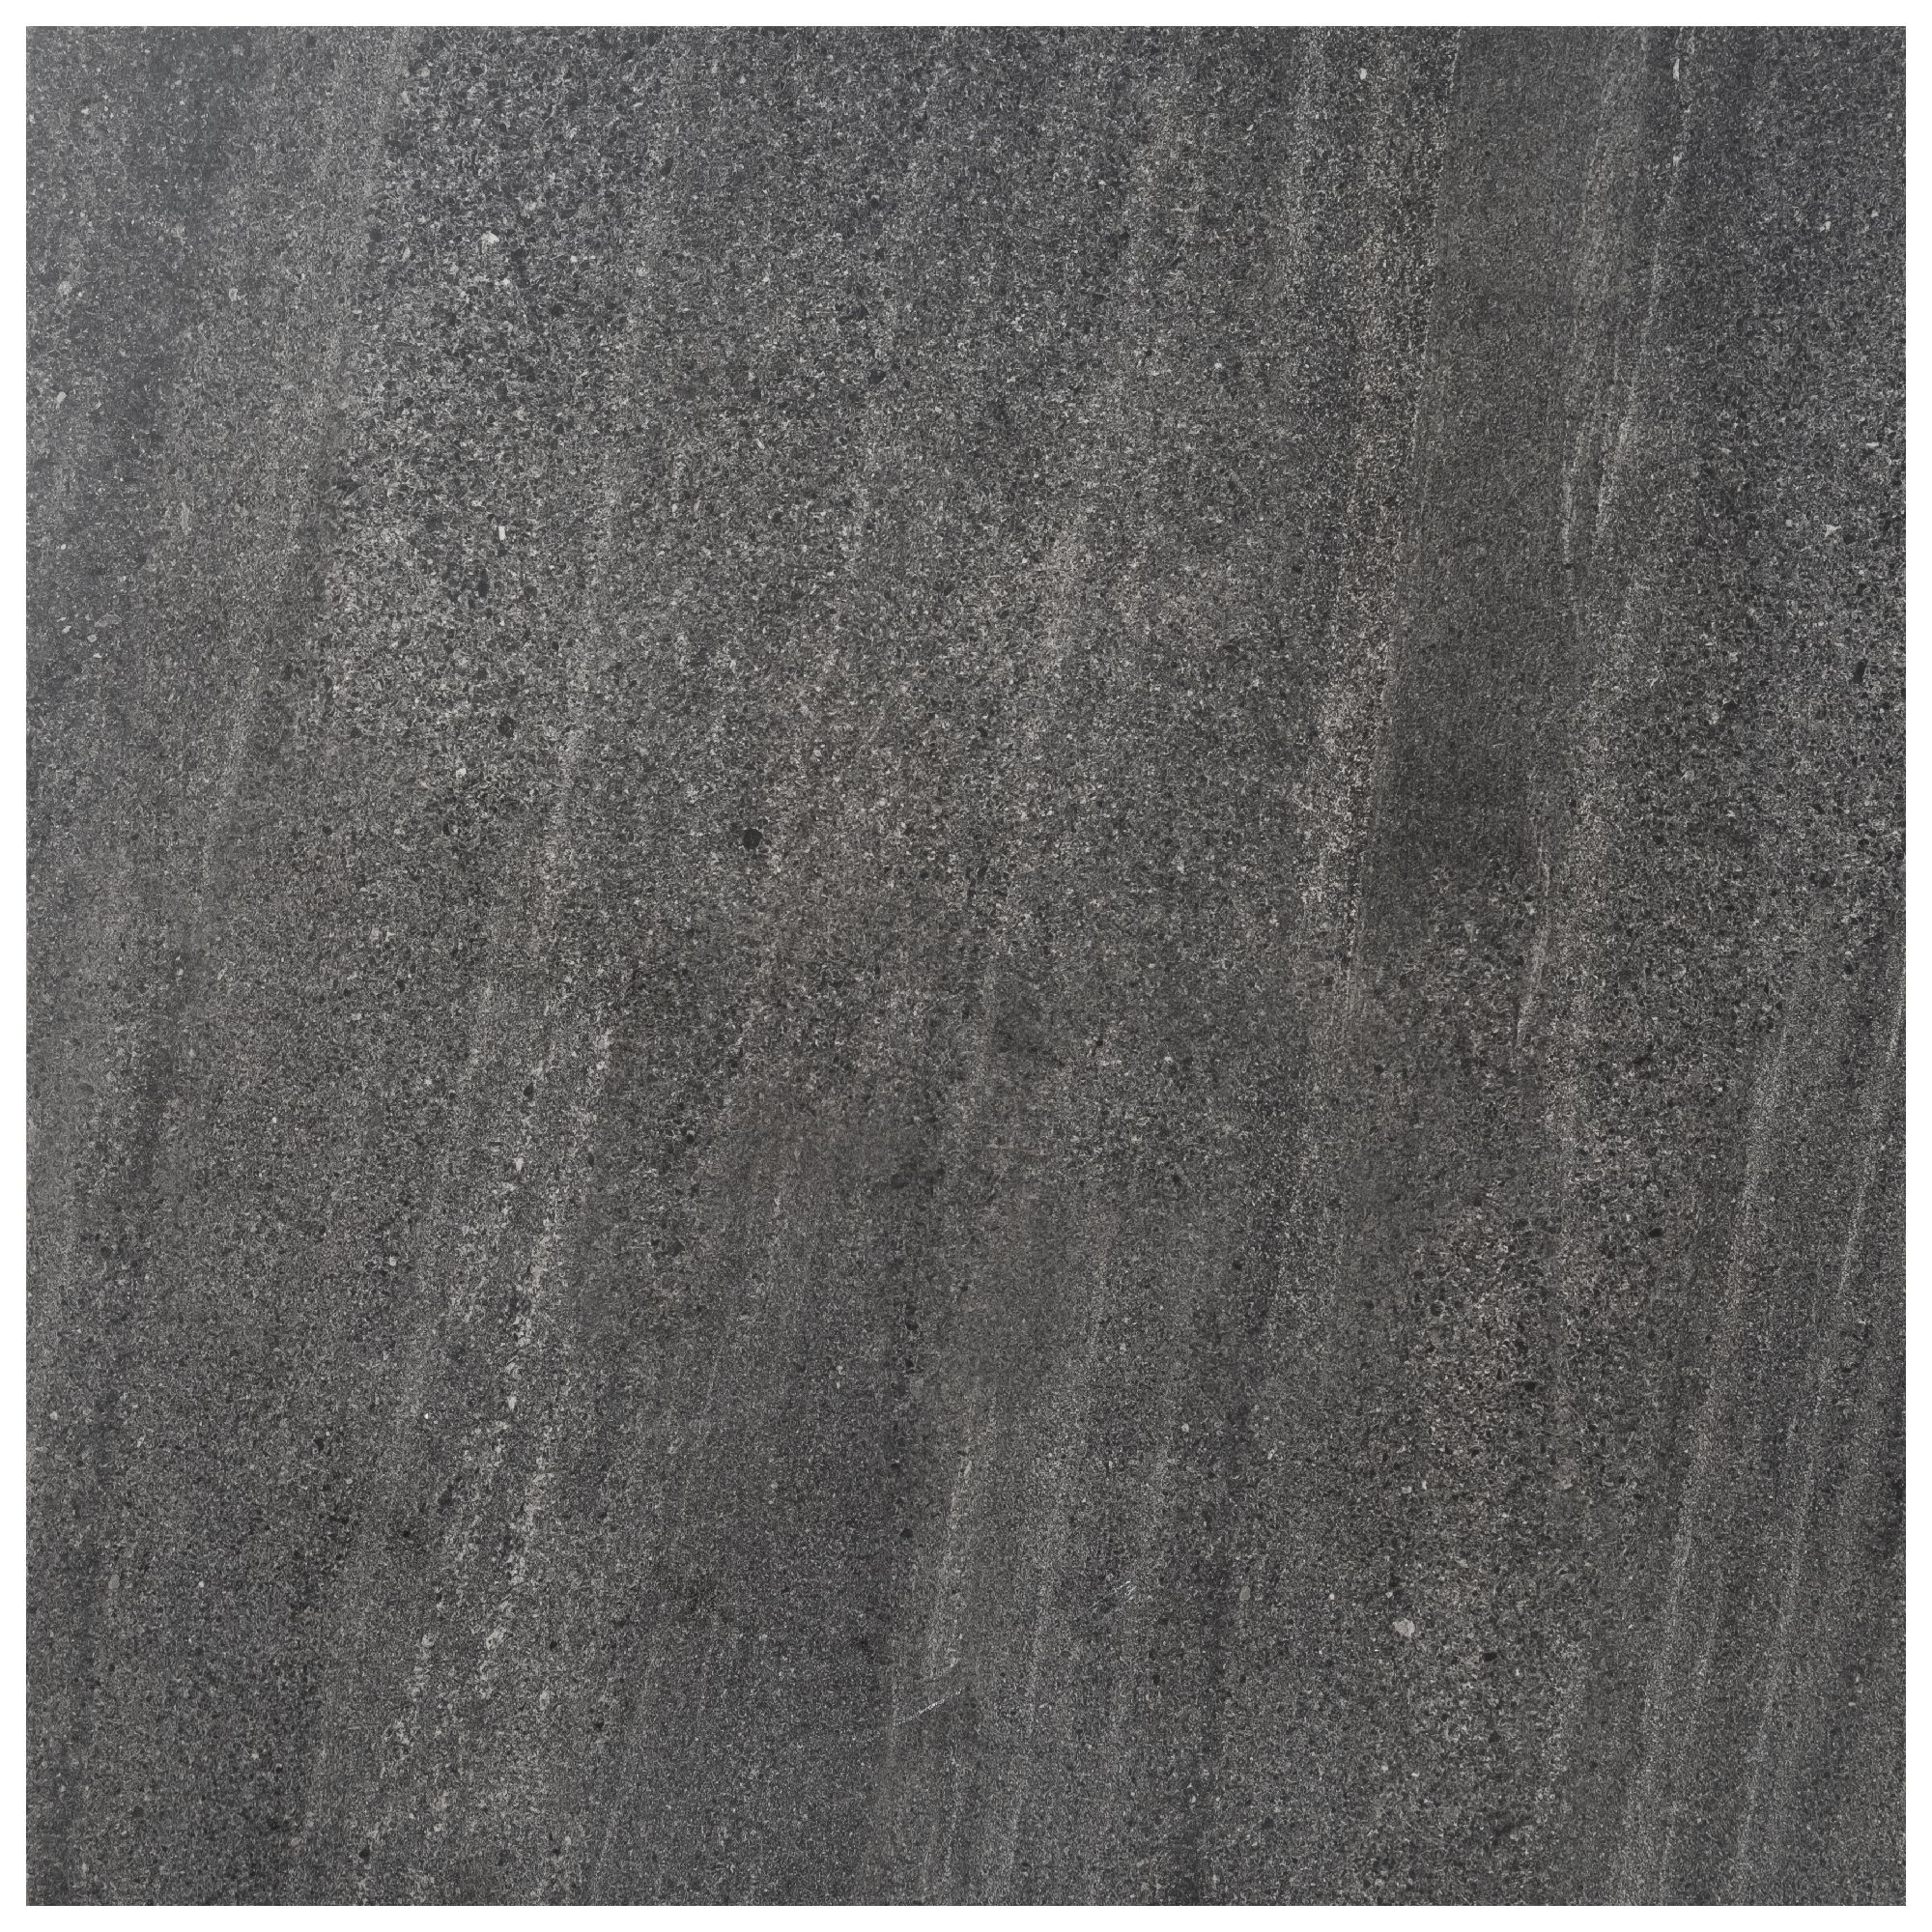 Agate Black Matt Stone effect Porcelain Outdoor Floor Tile, Pack of 2, (L)600mm (W)600mm